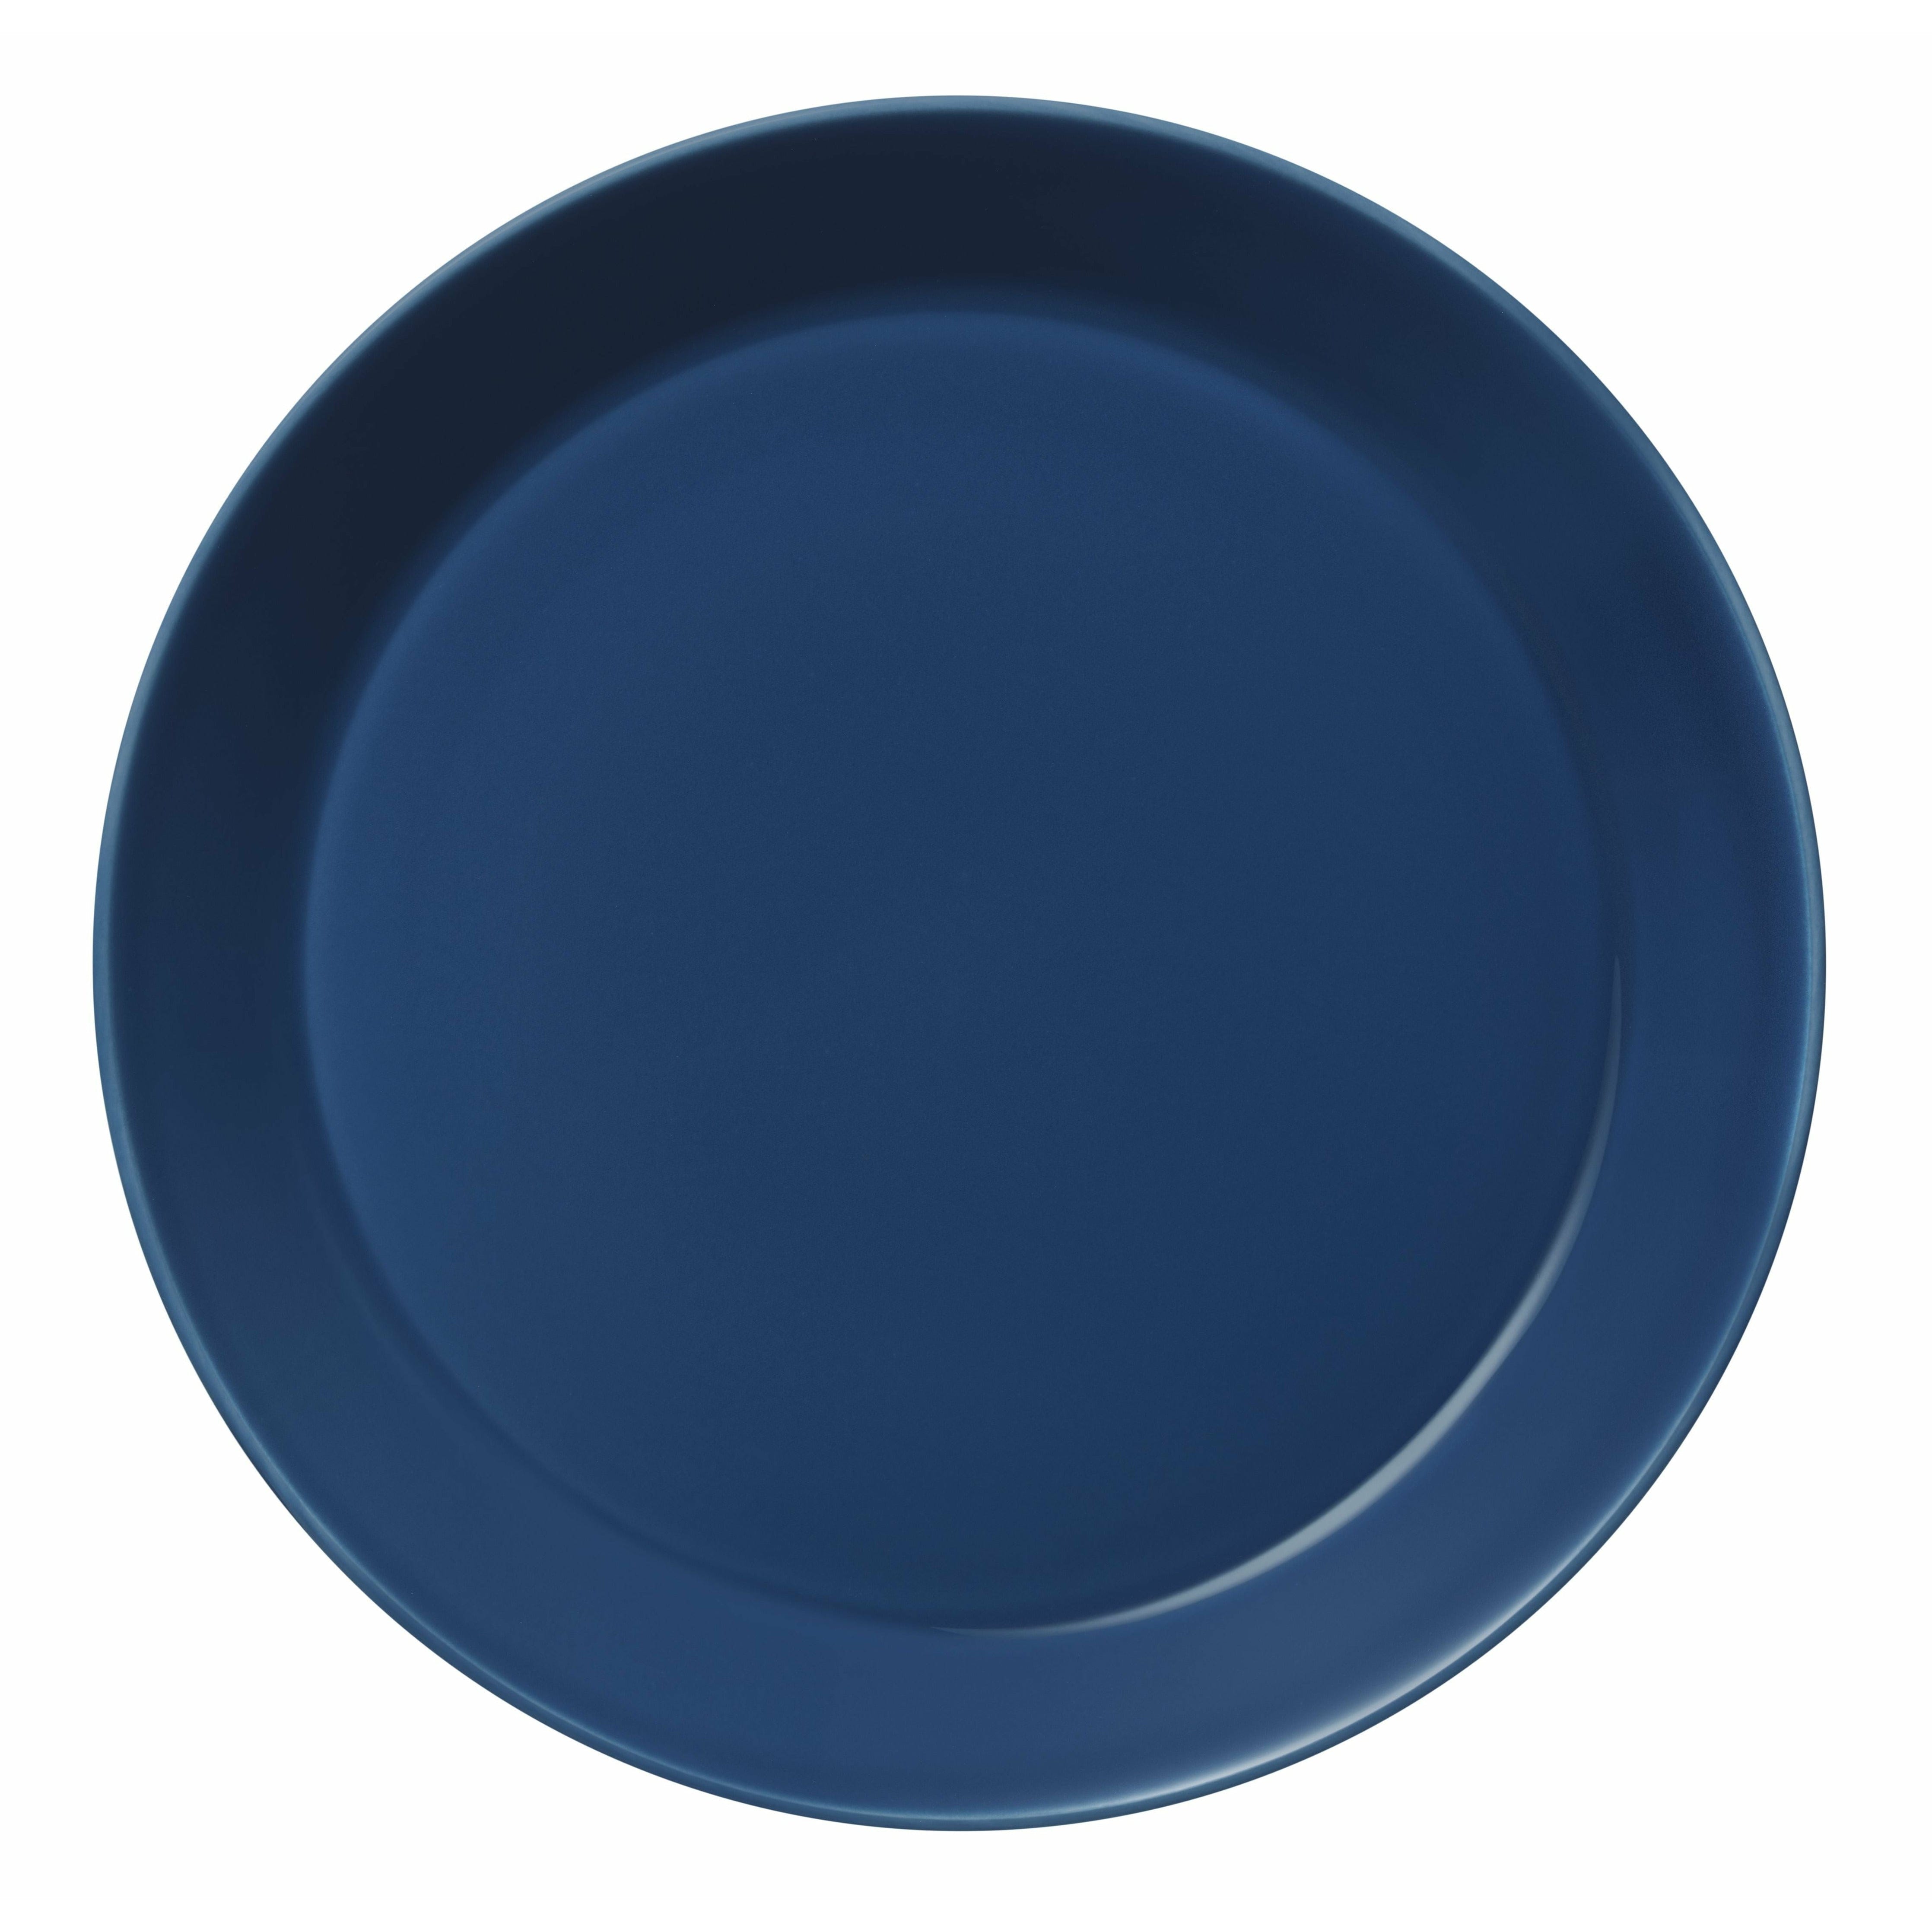 Iittala Teema plade 26 cm, vintage blå